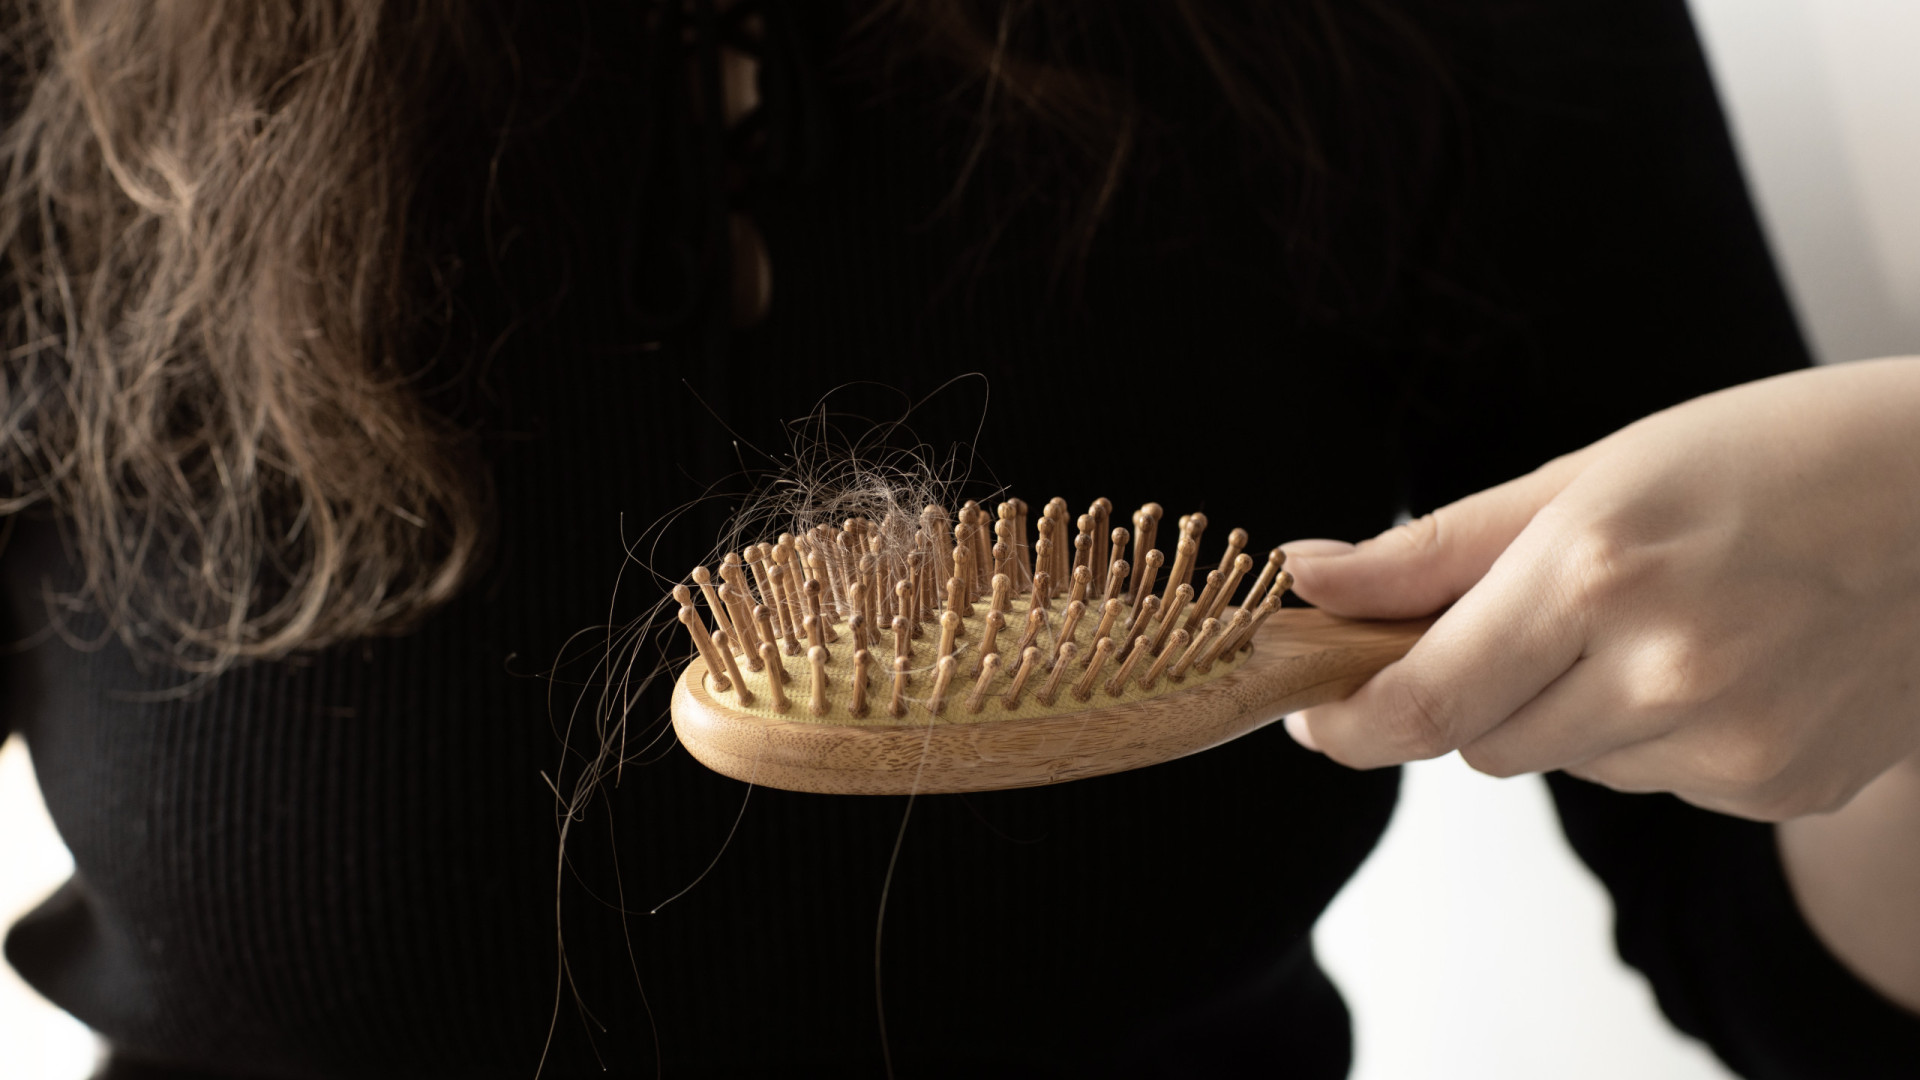 O sinal da doença hepática que se manifesta quando escova o cabelo